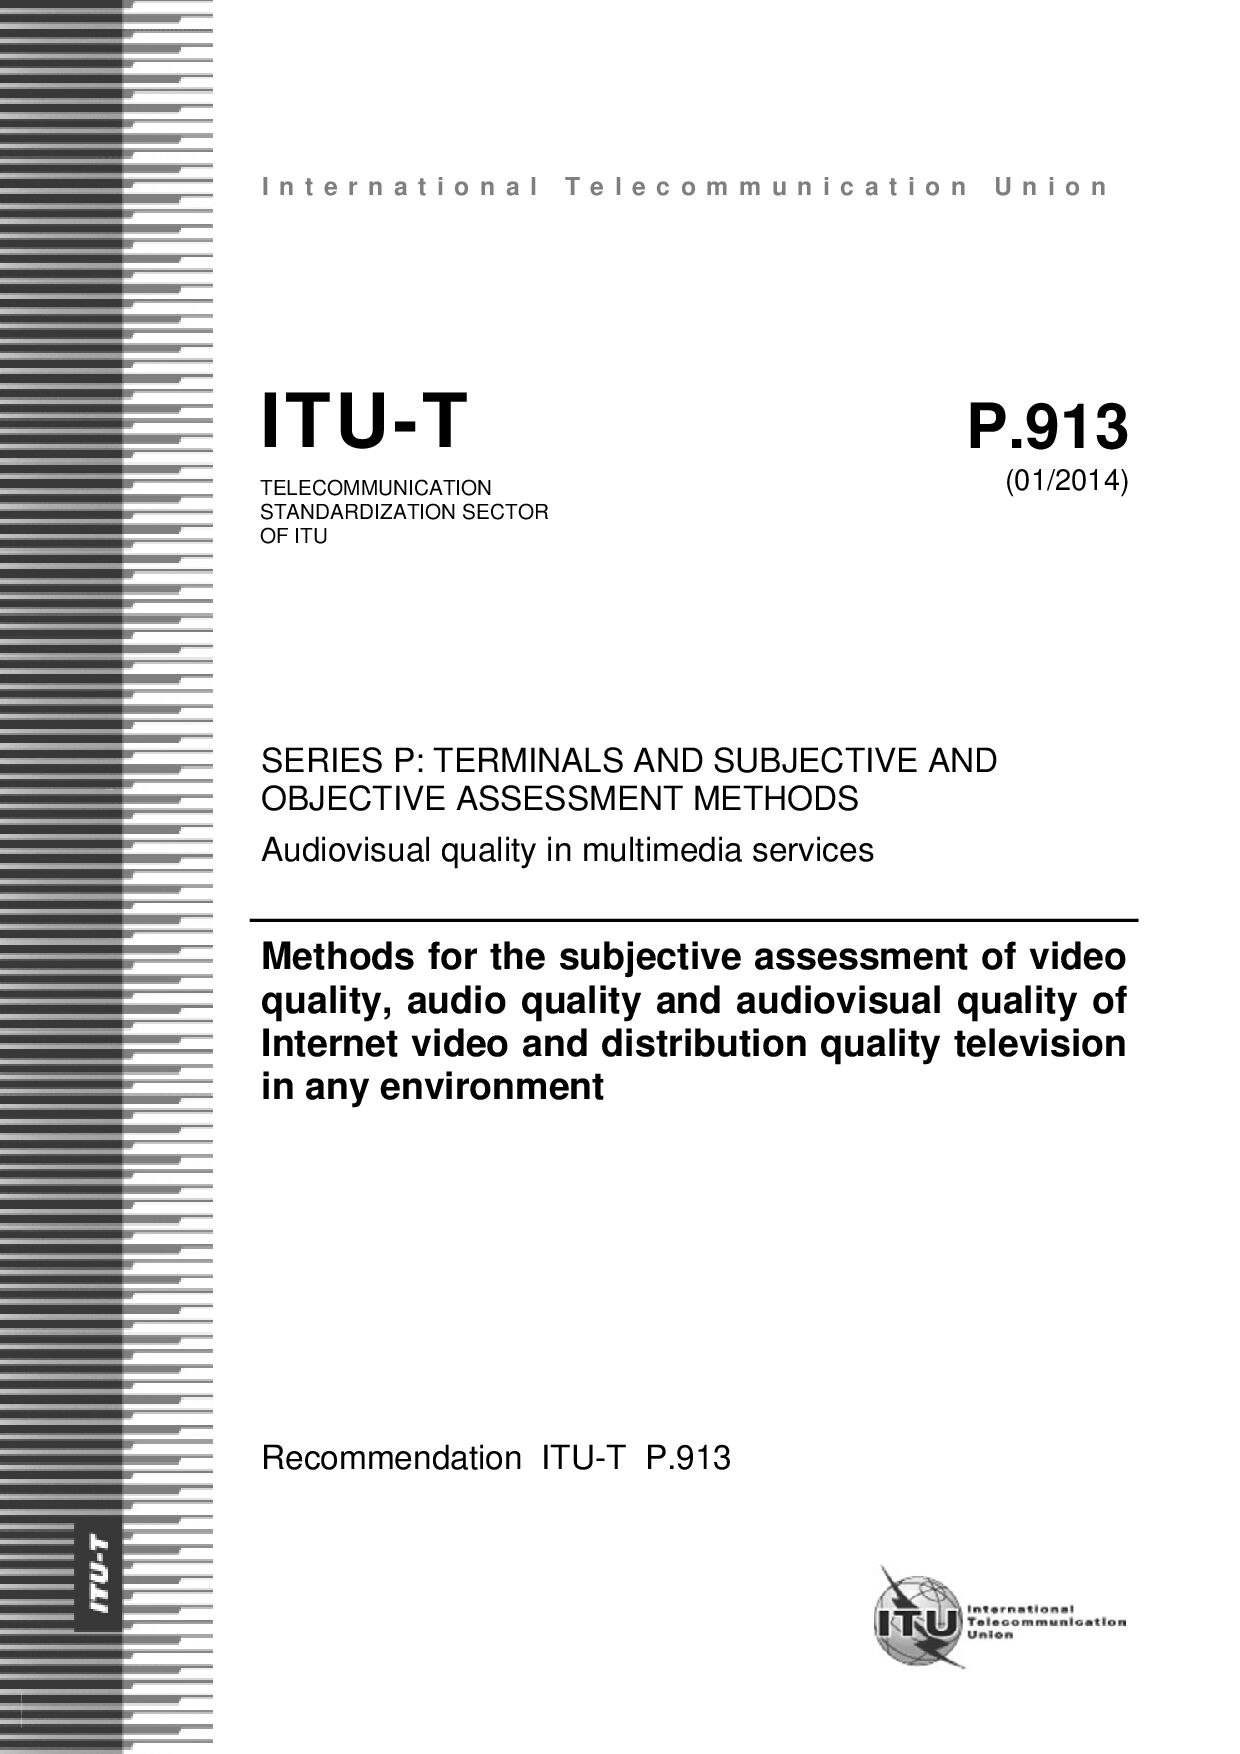 ITU-T P.913-2014